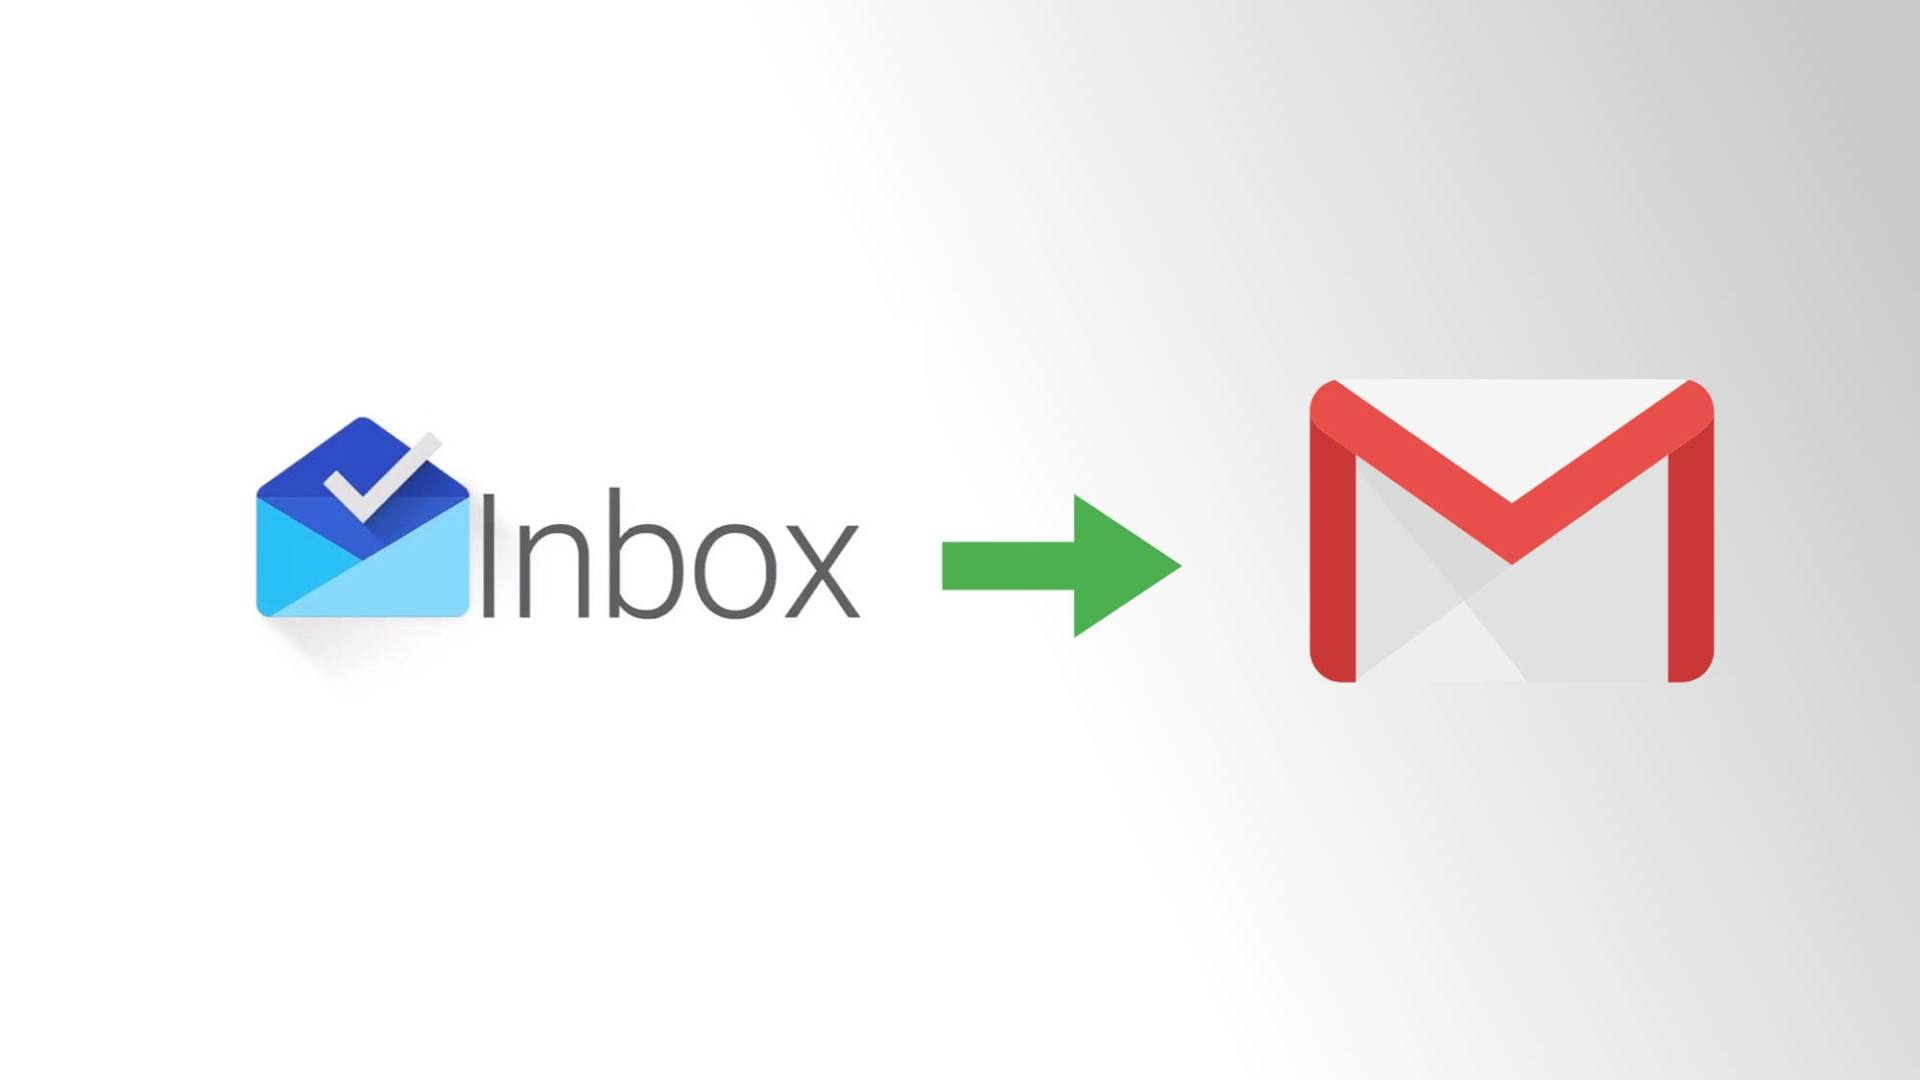 Managed Inbox Optimization